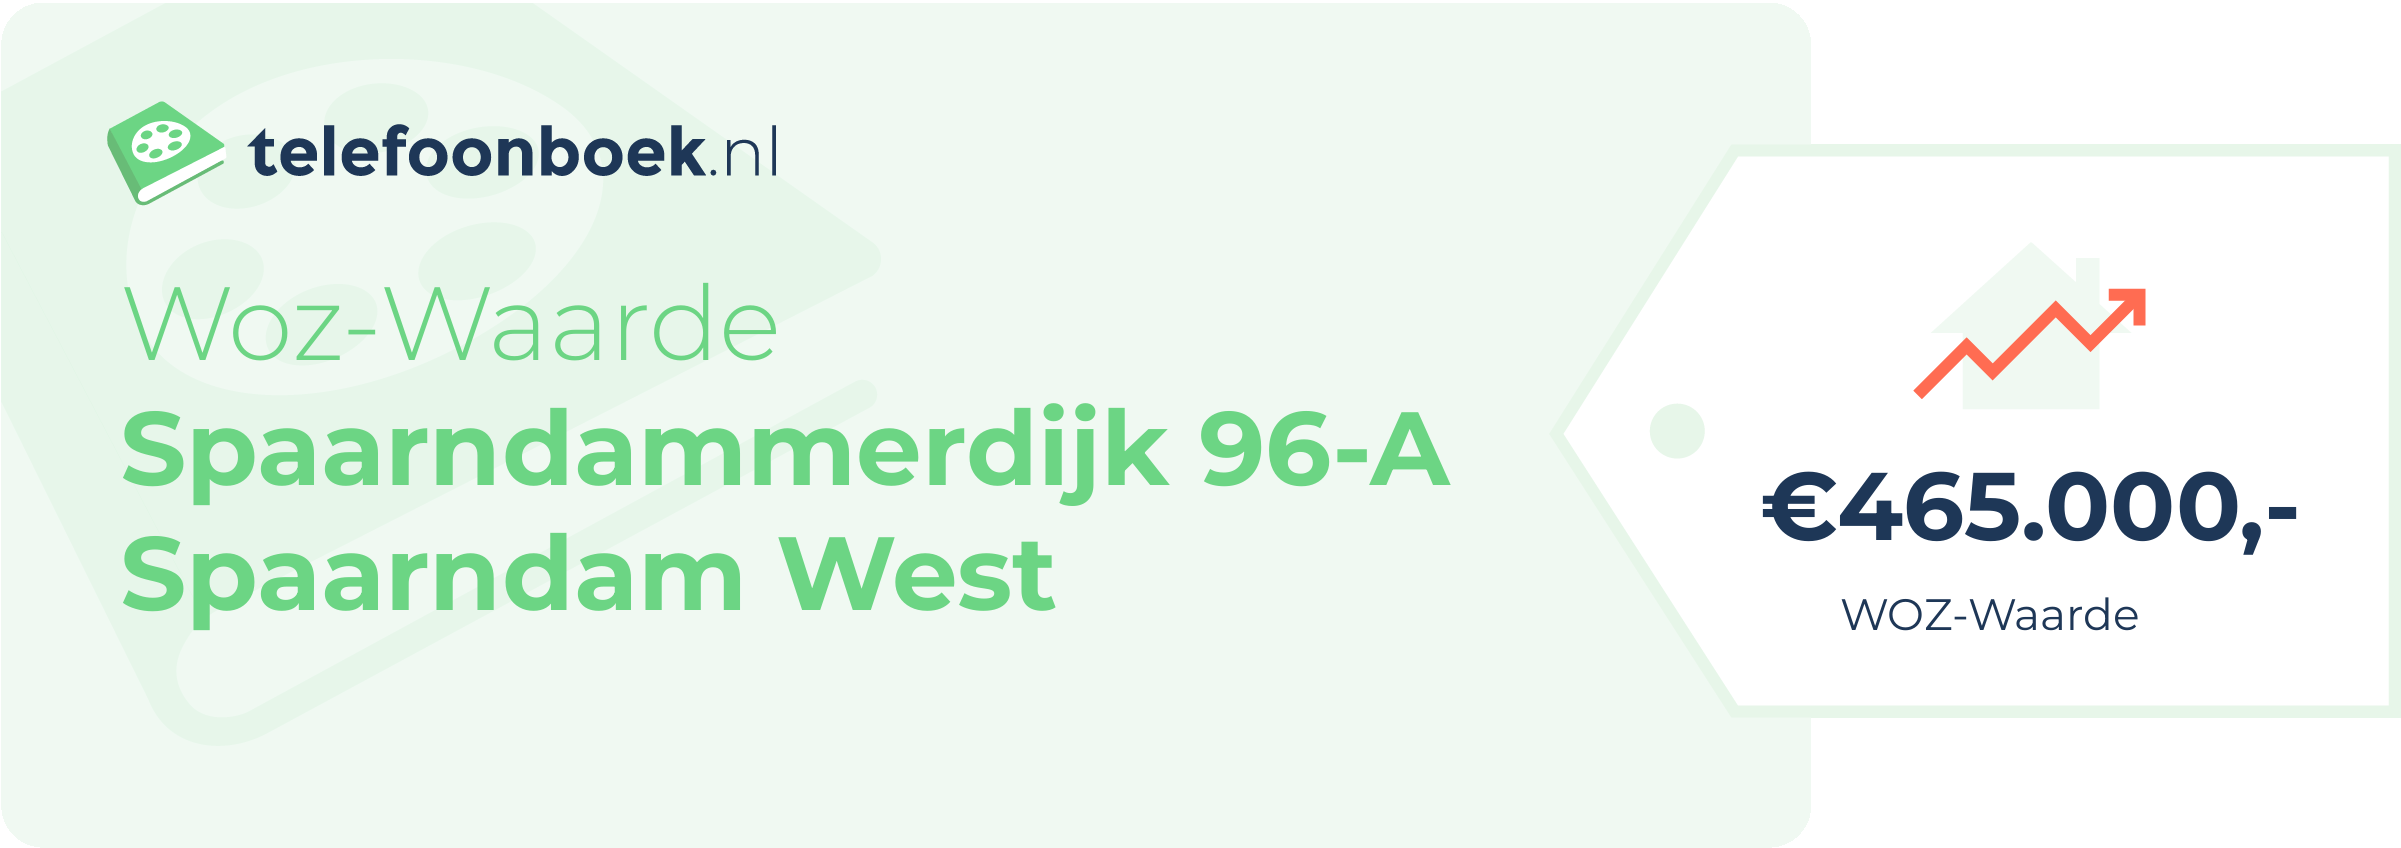 WOZ-waarde Spaarndammerdijk 96-A Spaarndam West